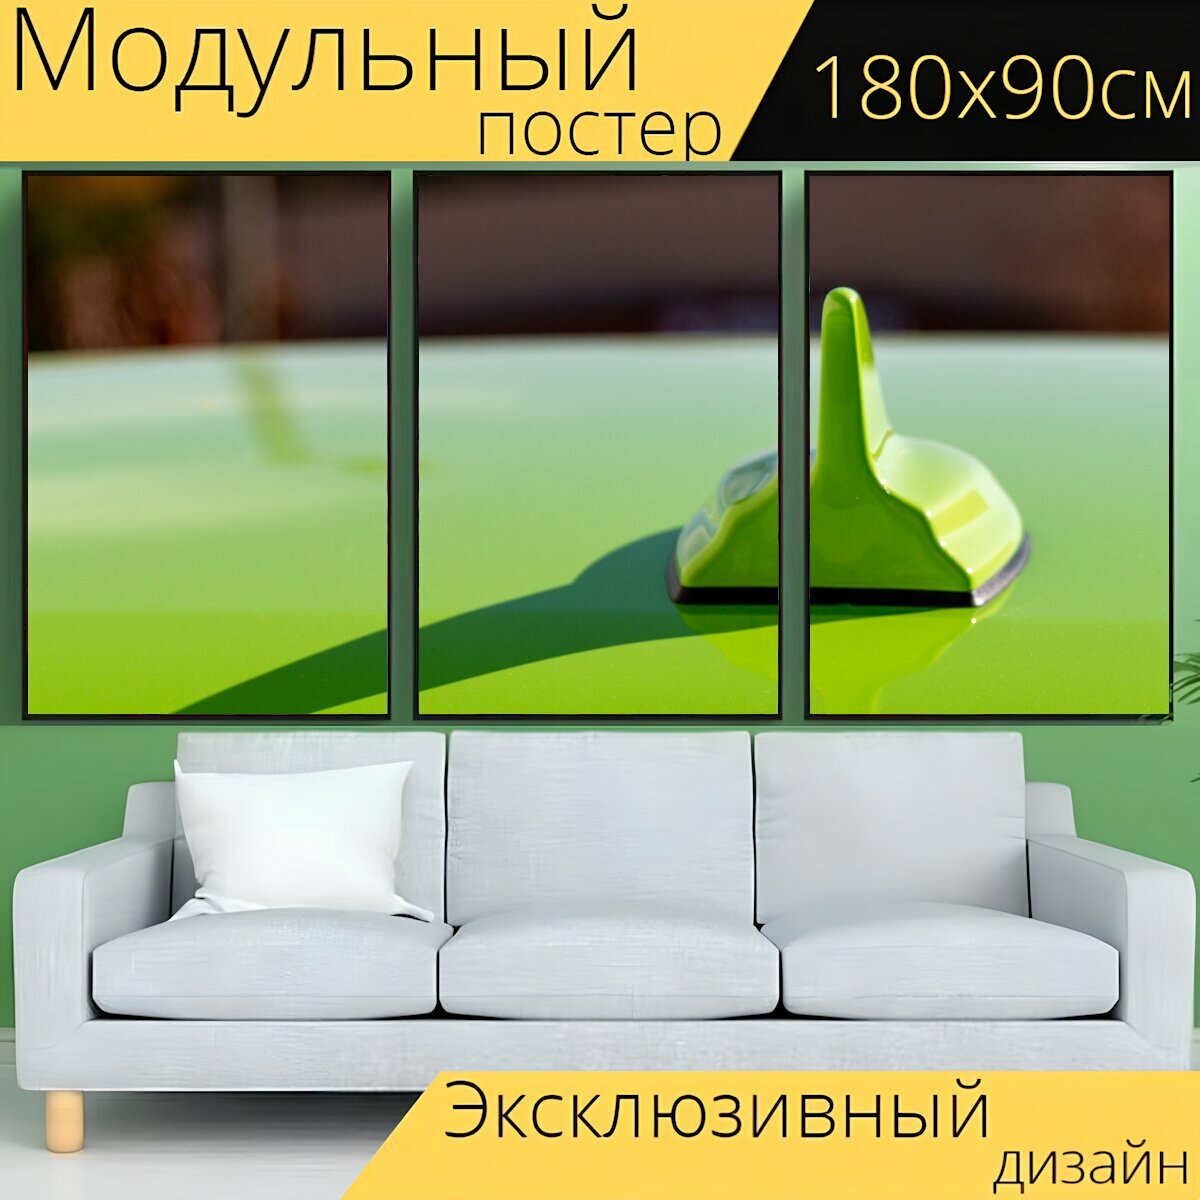 Модульный постер "Антенна, зеленый, машина" 180 x 90 см. для интерьера